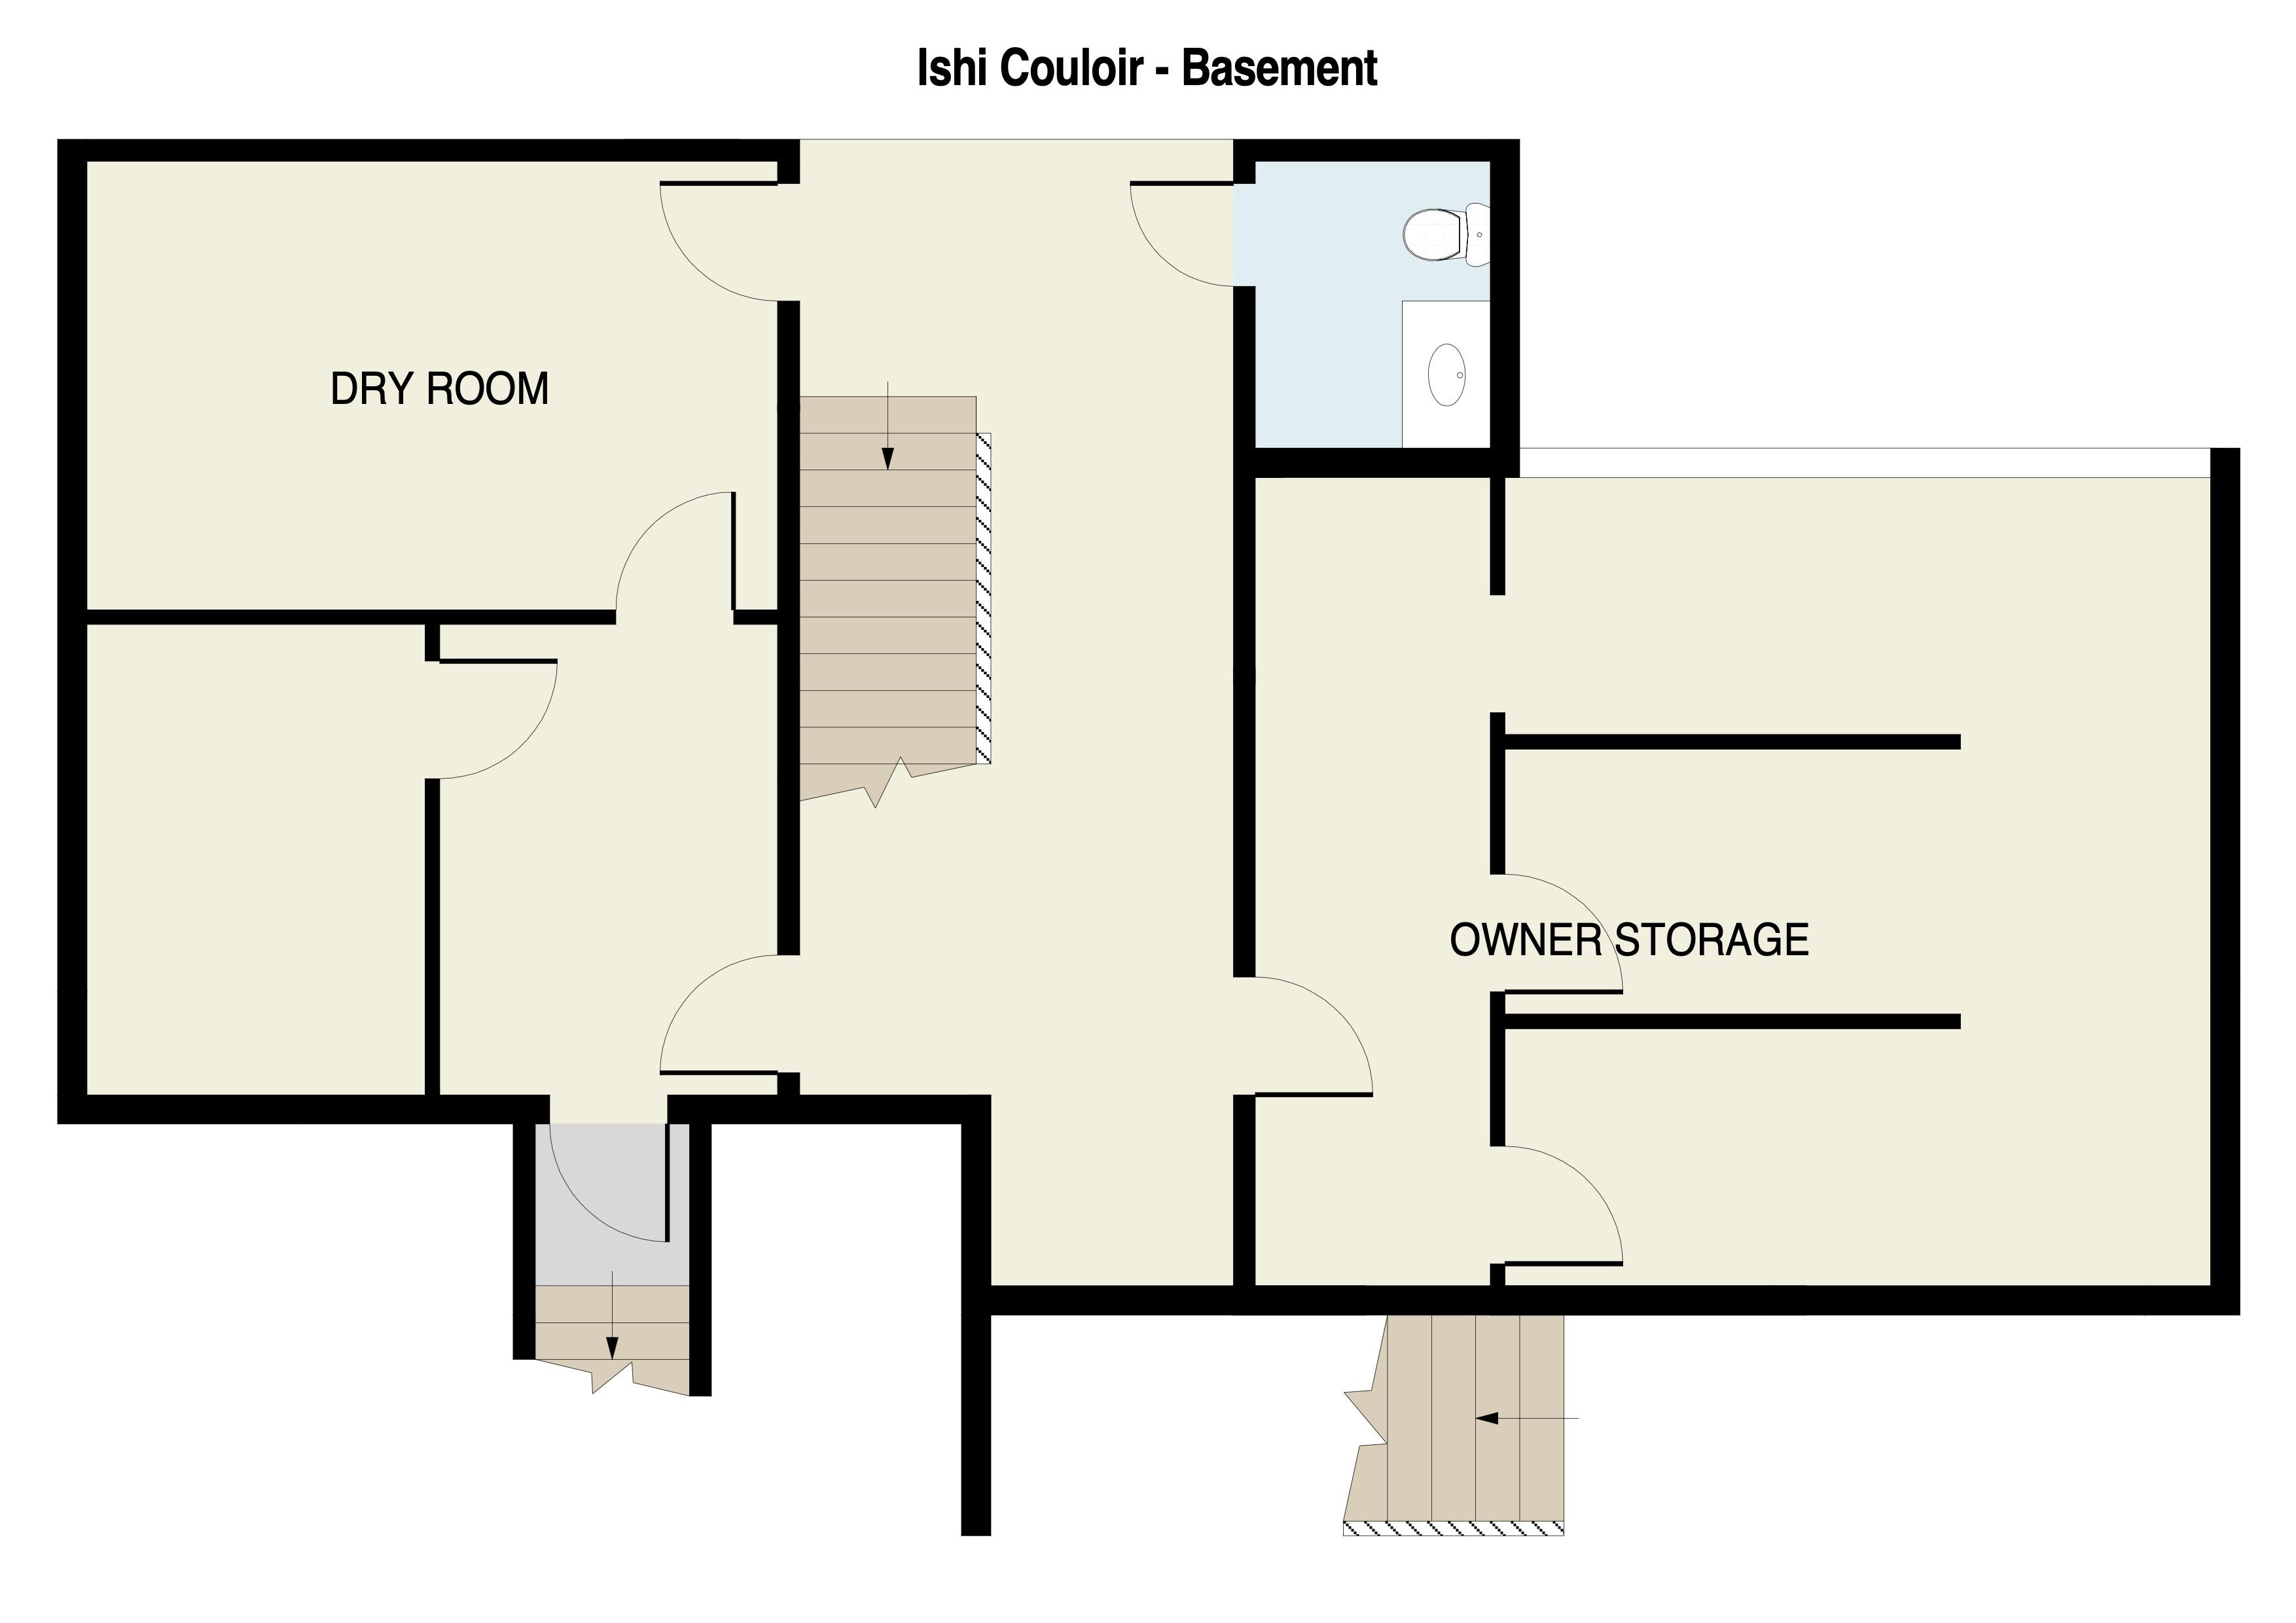 Ishi Couloir Basement Floor Plan